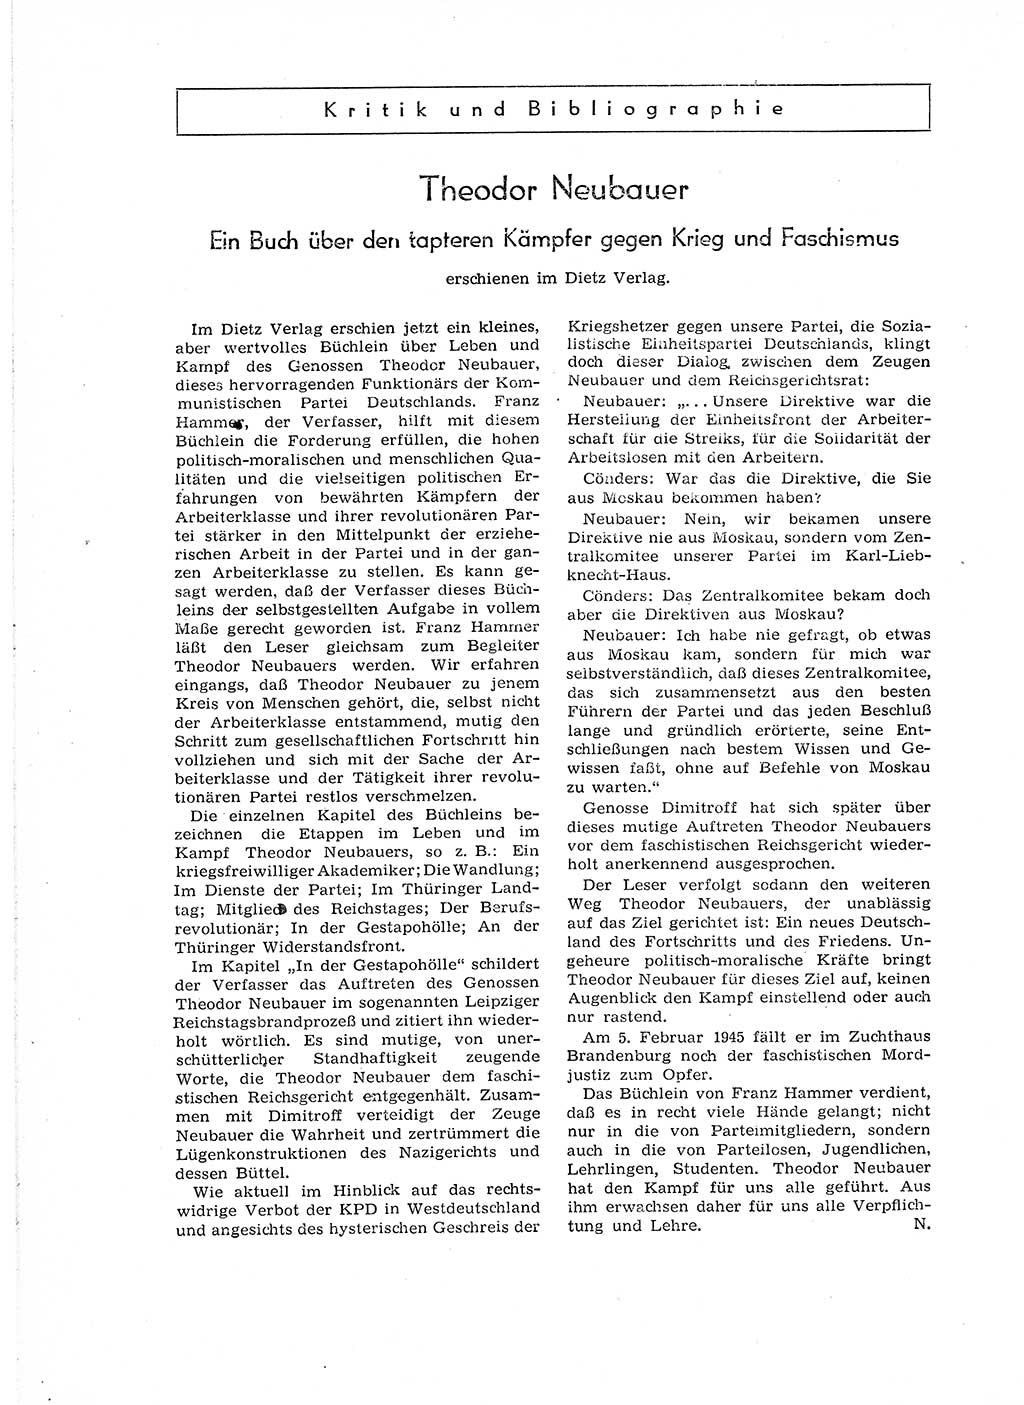 Neuer Weg (NW), Organ des Zentralkomitees (ZK) der SED (Sozialistische Einheitspartei Deutschlands) für Fragen des Parteiaufbaus und des Parteilebens, 12. Jahrgang [Deutsche Demokratische Republik (DDR)] 1957, Seite 62 (NW ZK SED DDR 1957, S. 62)